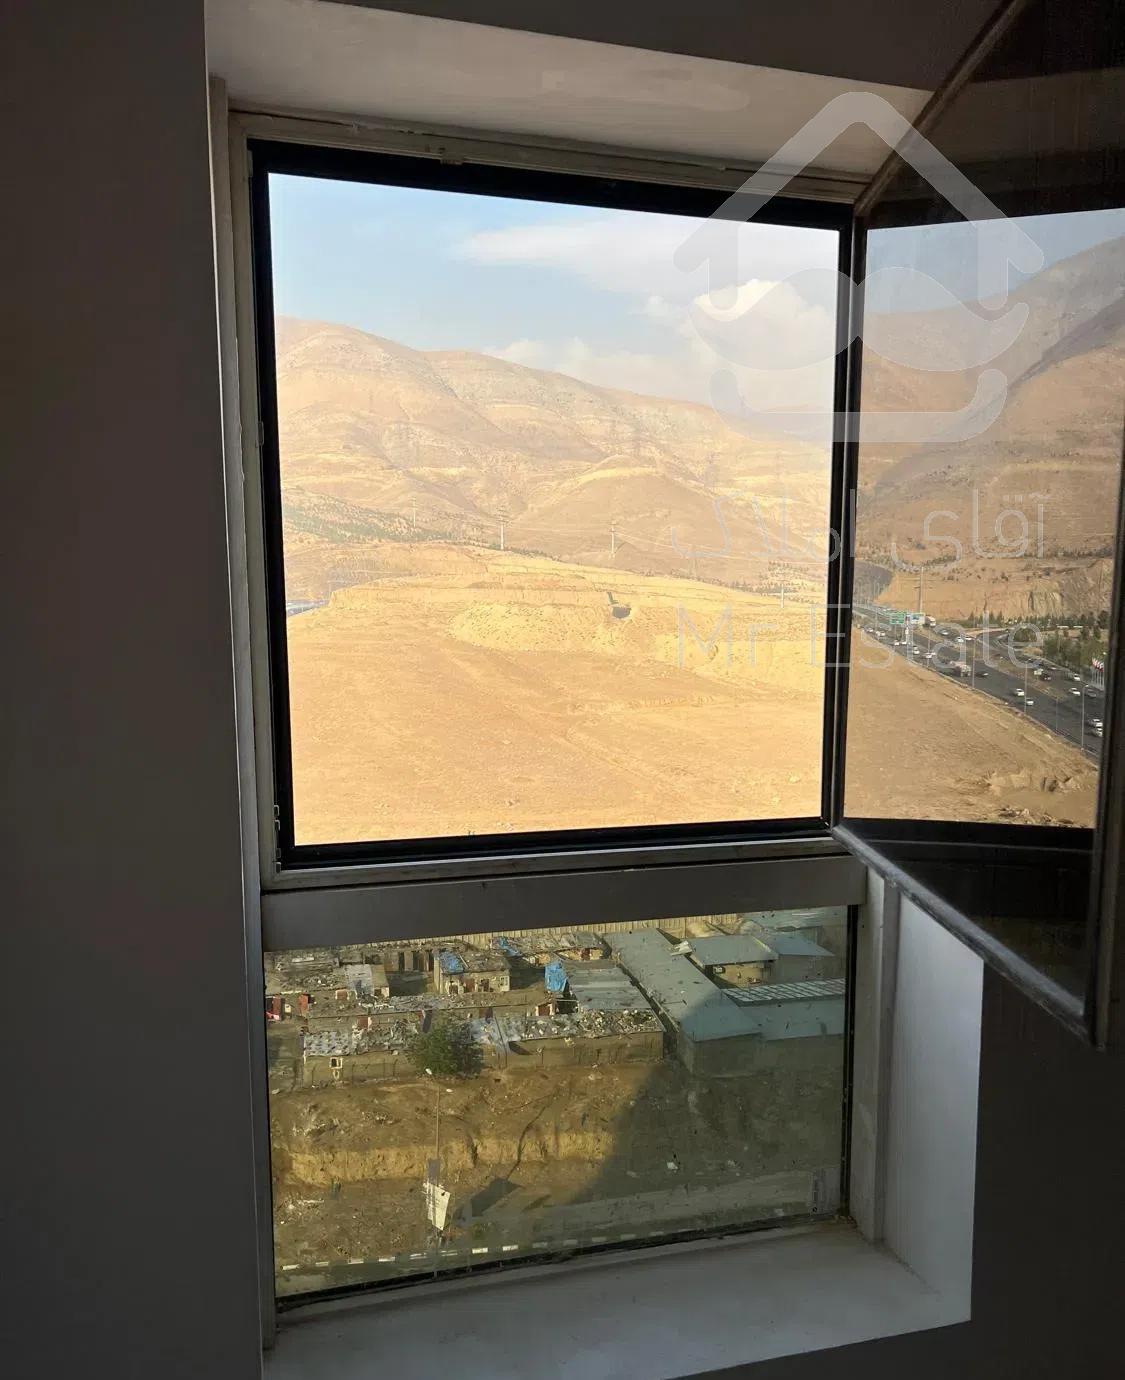 فروش واحد آپارتمان در شهرک شهید خرازی با دید